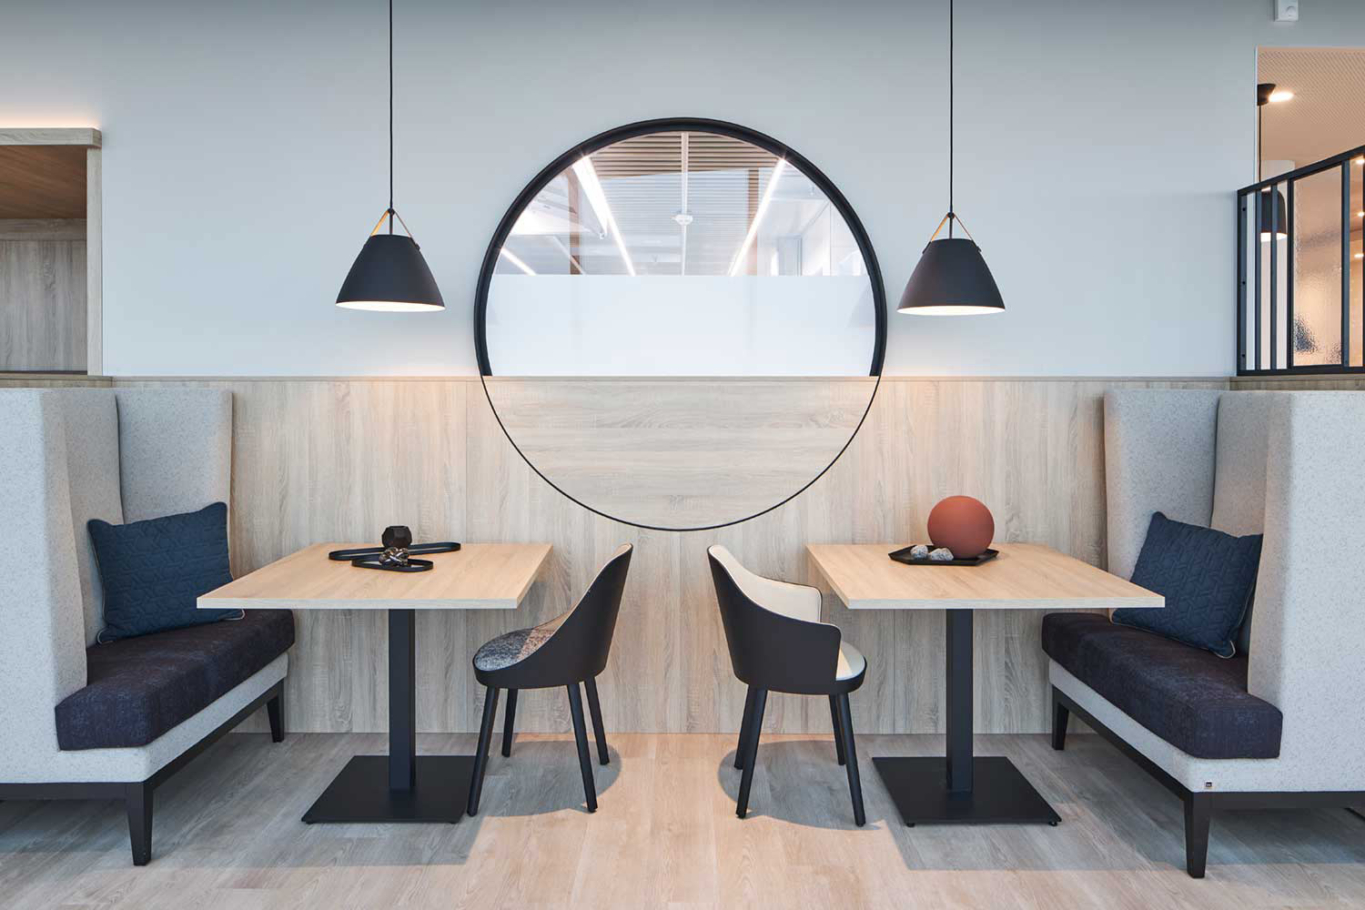 Interiorfotografie Lioba Schneider: Der neugestaltete Frühstücksraum des Panoramahauses in Dornbirn. Helles Holz wechselt mit schwarzen Gestaltungselementen.